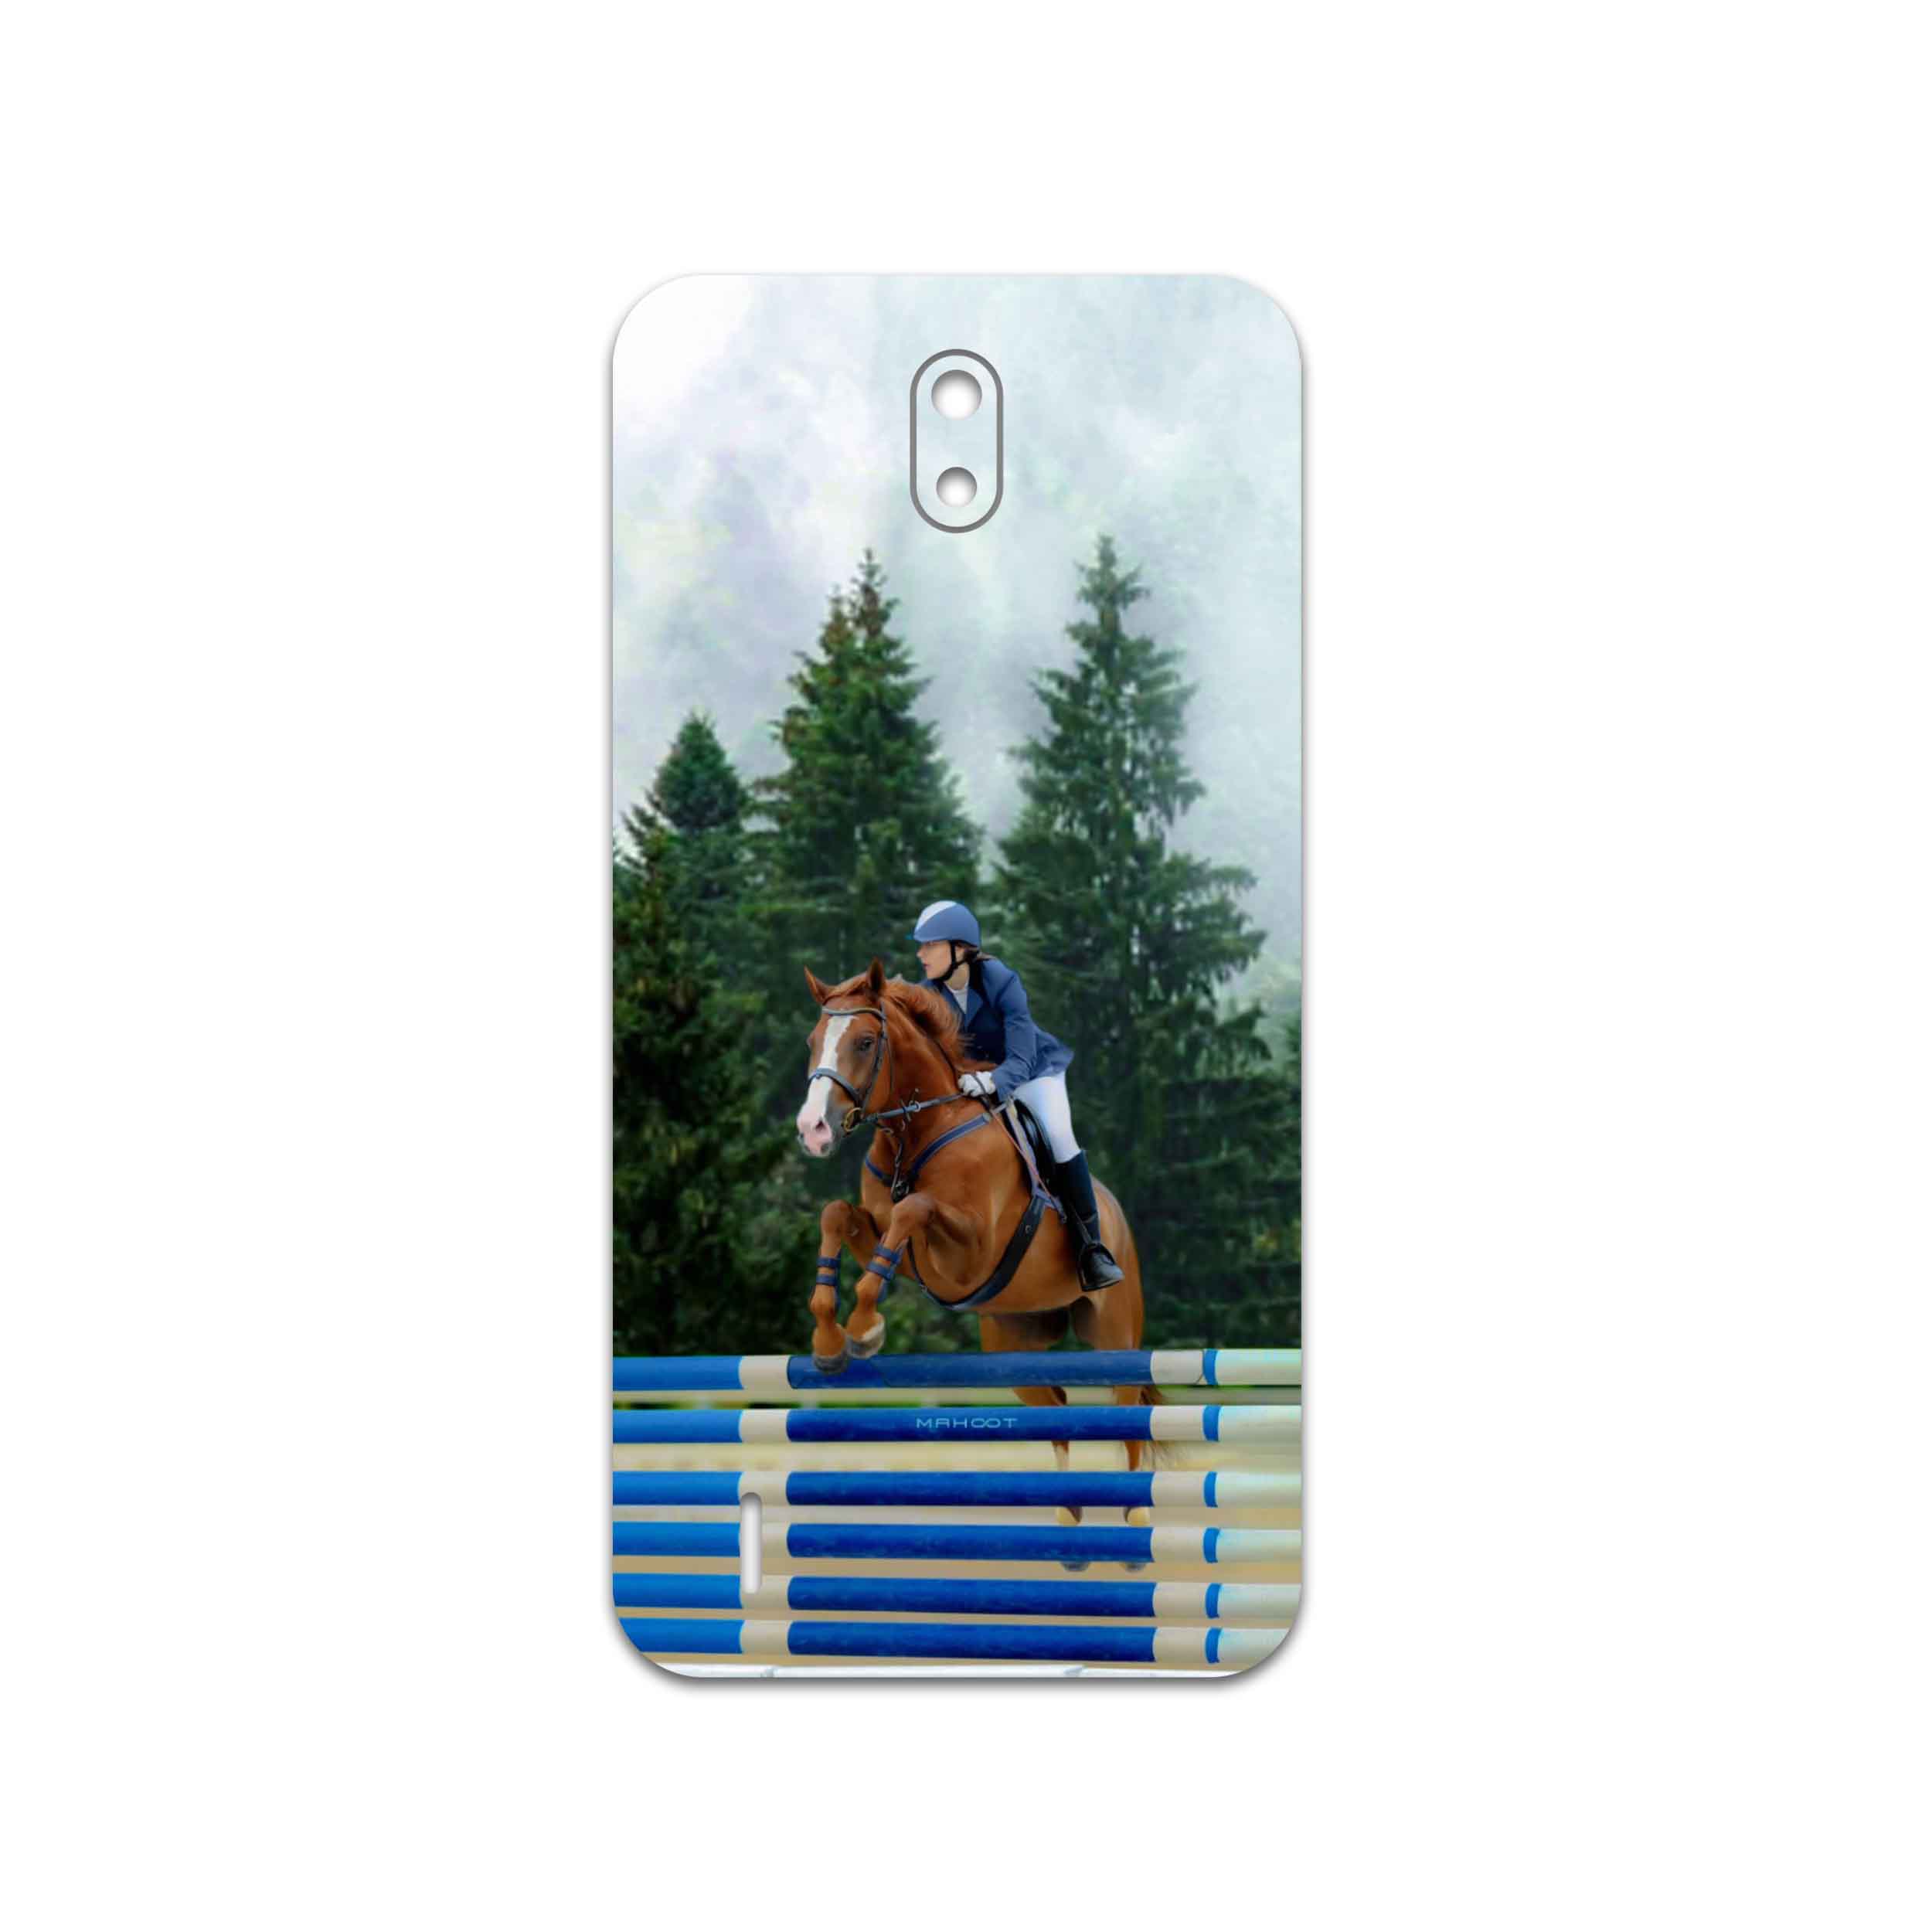 برچسب پوششی ماهوت مدل Equestrianism مناسب برای گوشی موبایل نوکیا C1